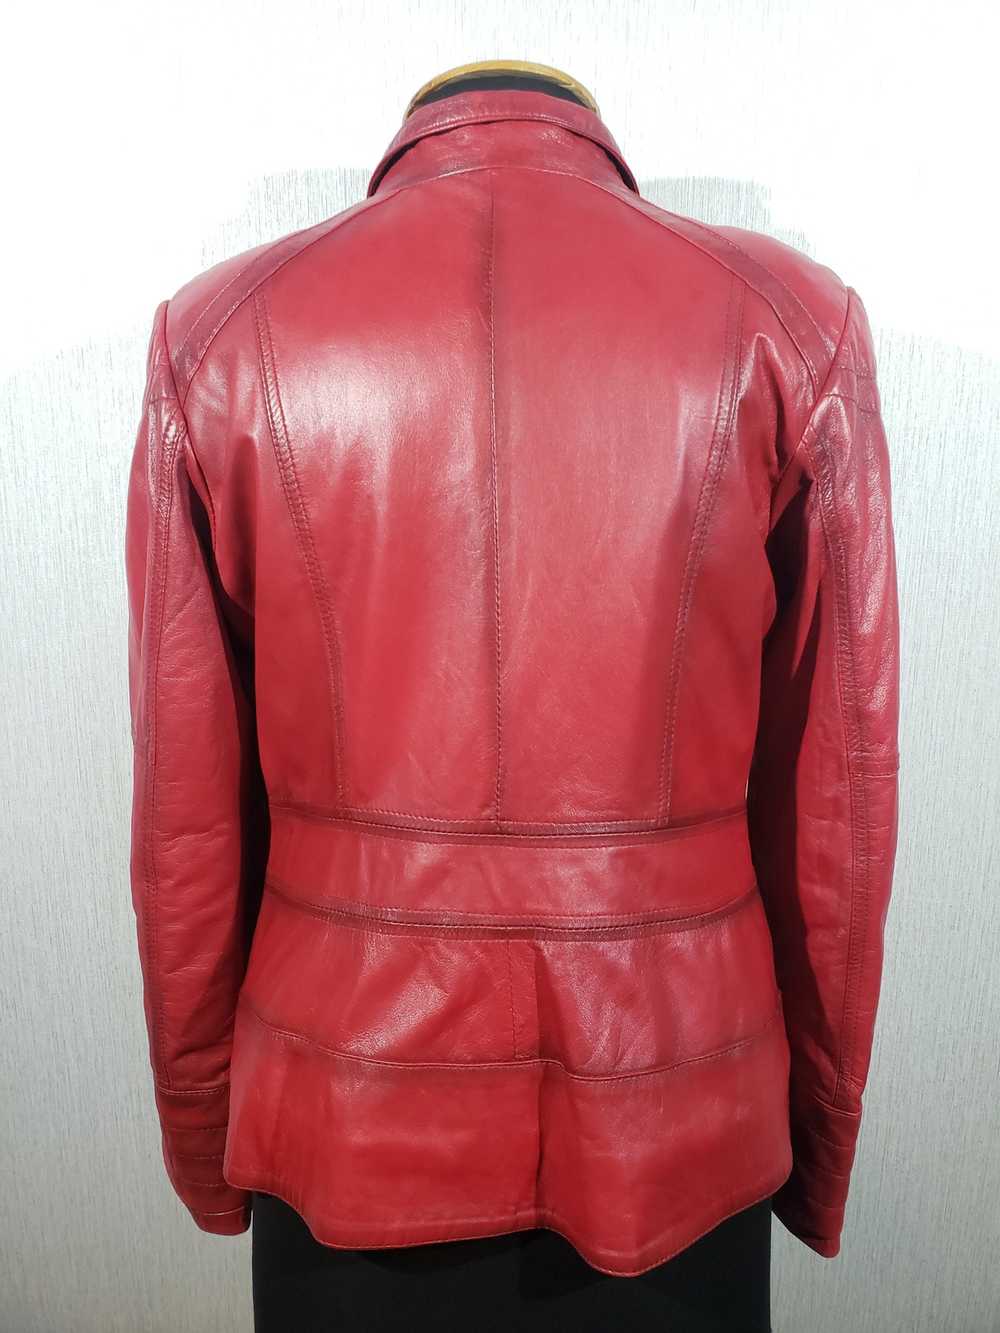 Designer × Rare Stylish red leather women's jacke… - image 4